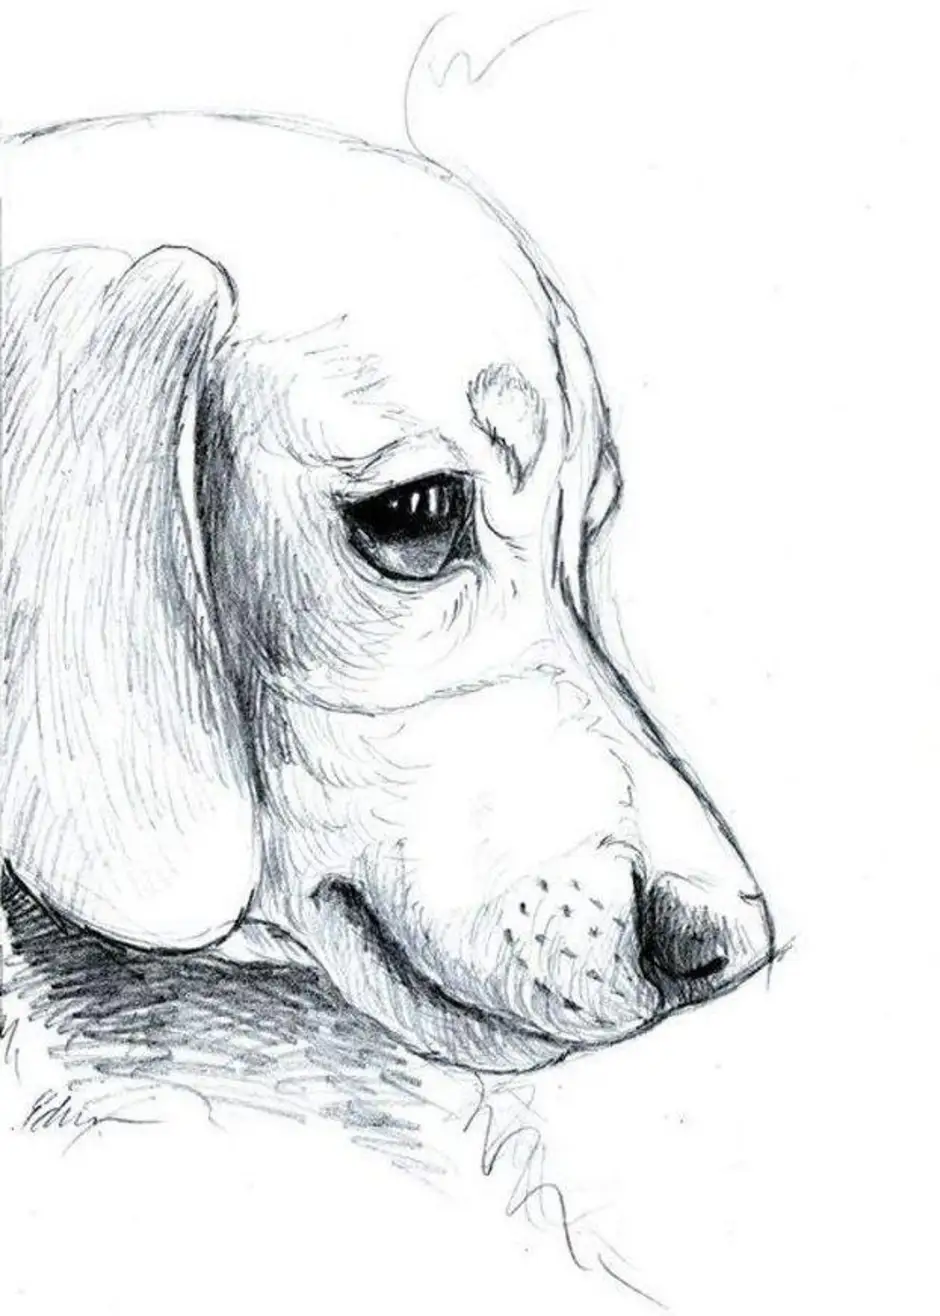 нарисованные собаки картинки простые